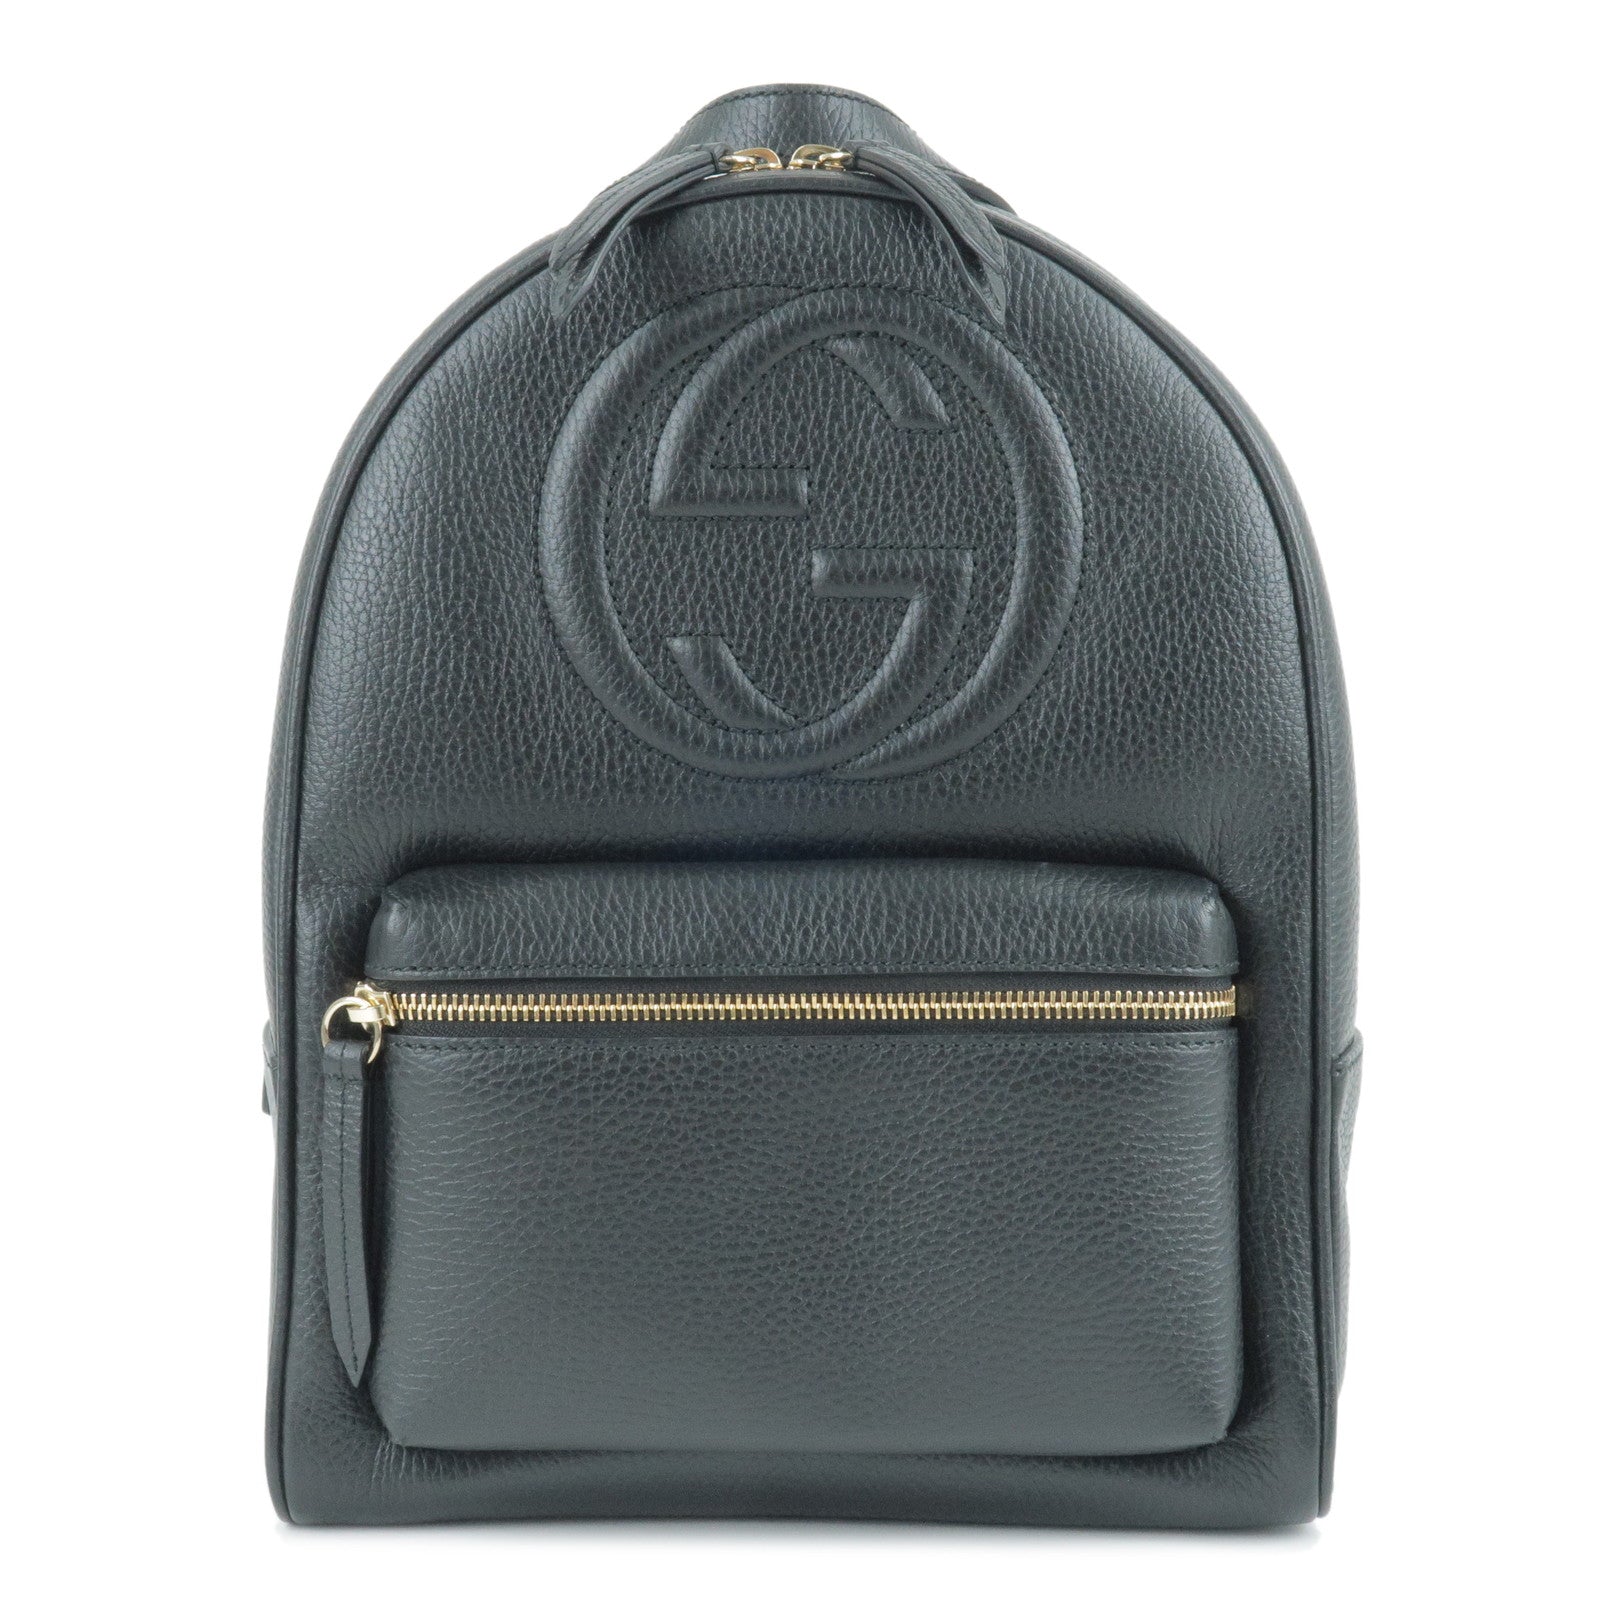 GUCCI-SOHO-Interlocking-G-Leather-Back-Pack-Black-536192